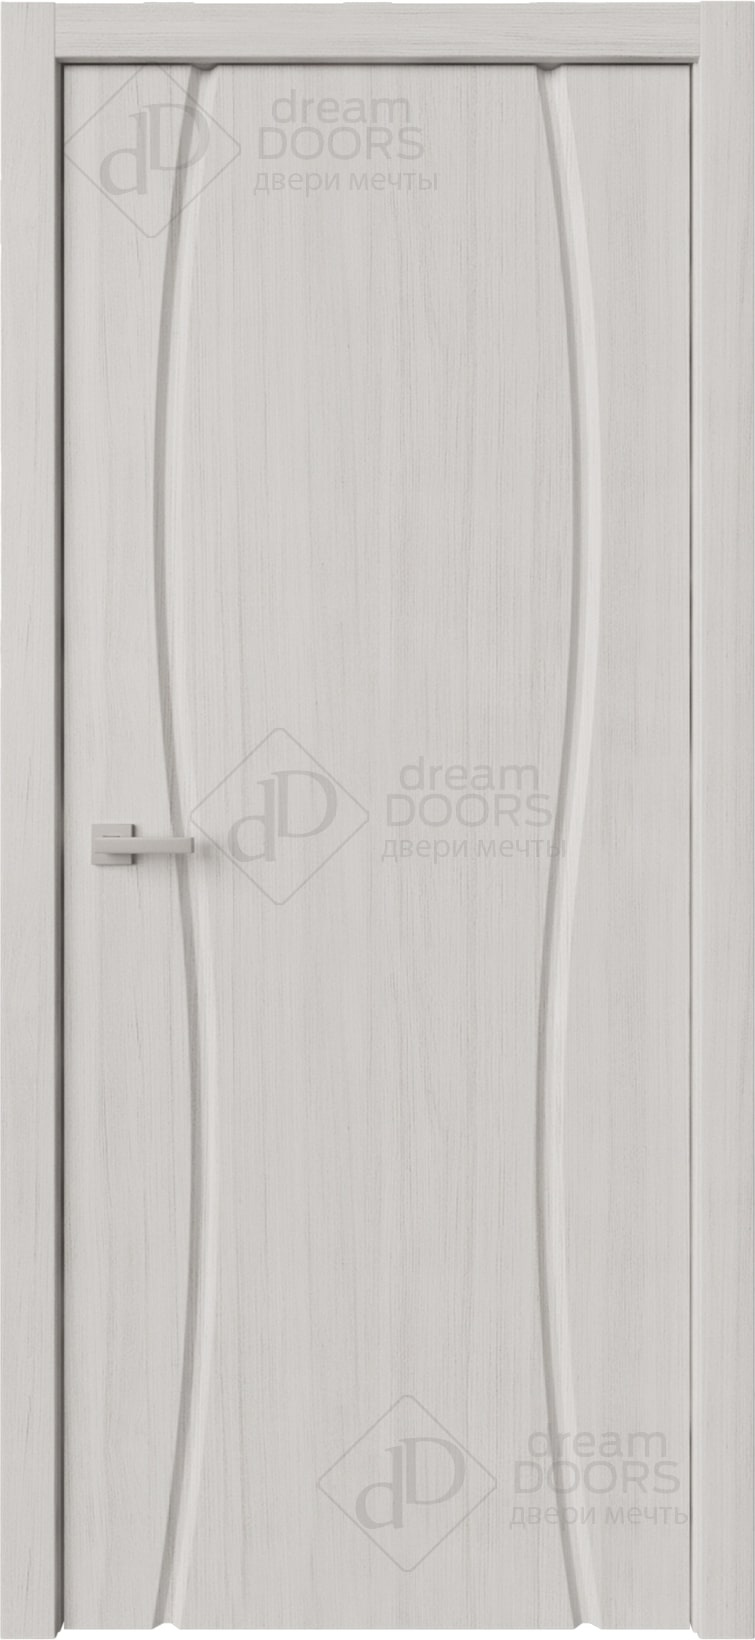 Dream Doors Межкомнатная дверь Сириус полное ДГ, арт. 20090 - фото №2